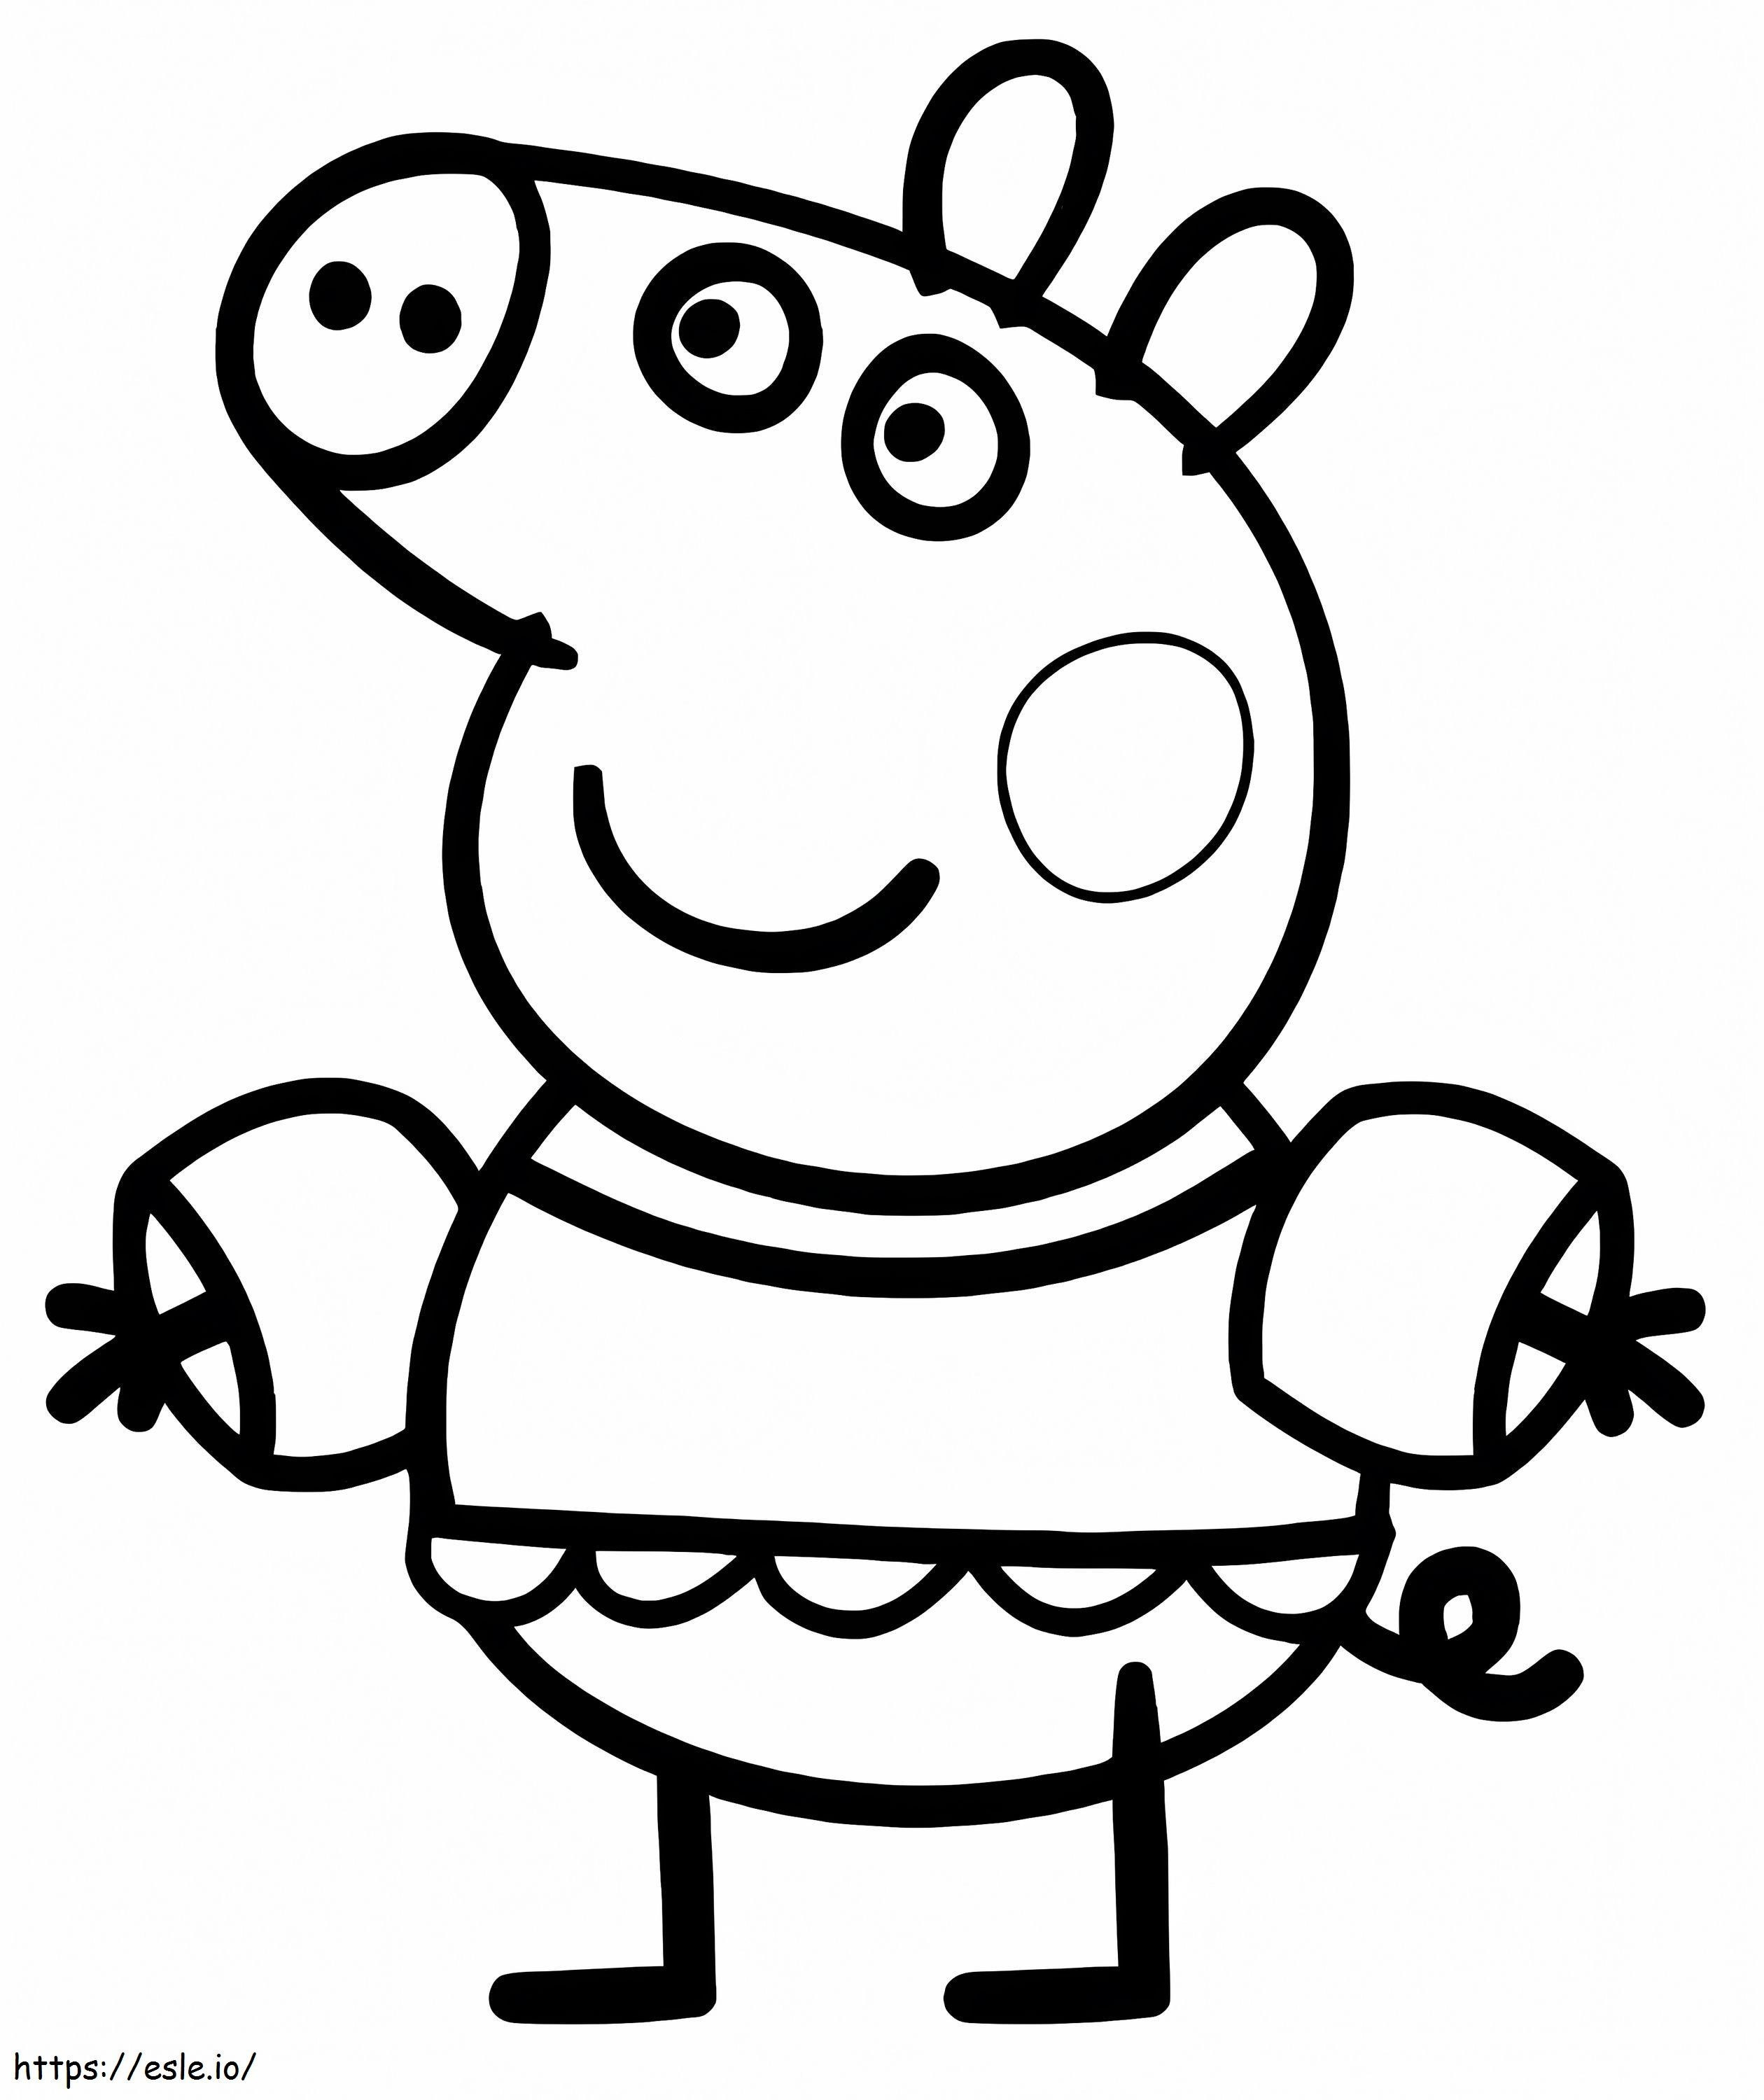 Desenhos da Peppa Pig para colorir  Peppa pig para colorir, Desenhos para  colorir peppa, Porquinha peppa